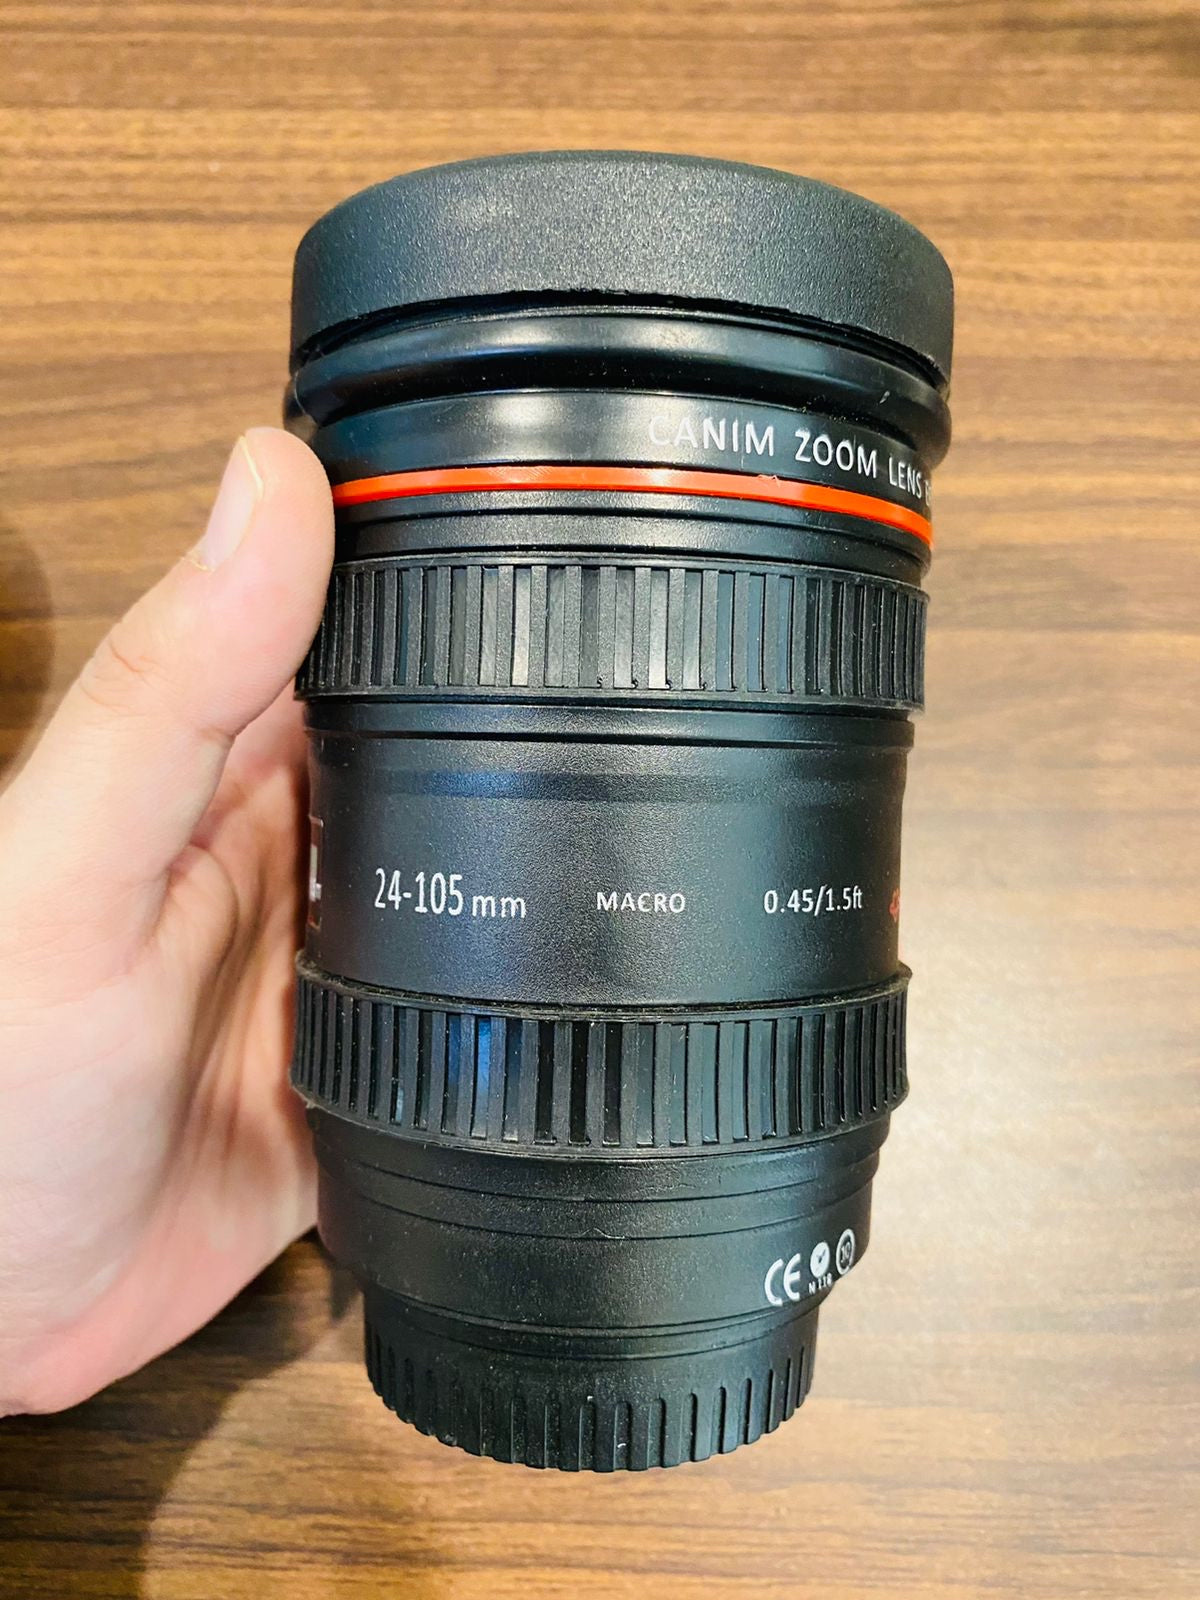 Camera Lens Insulated Mug